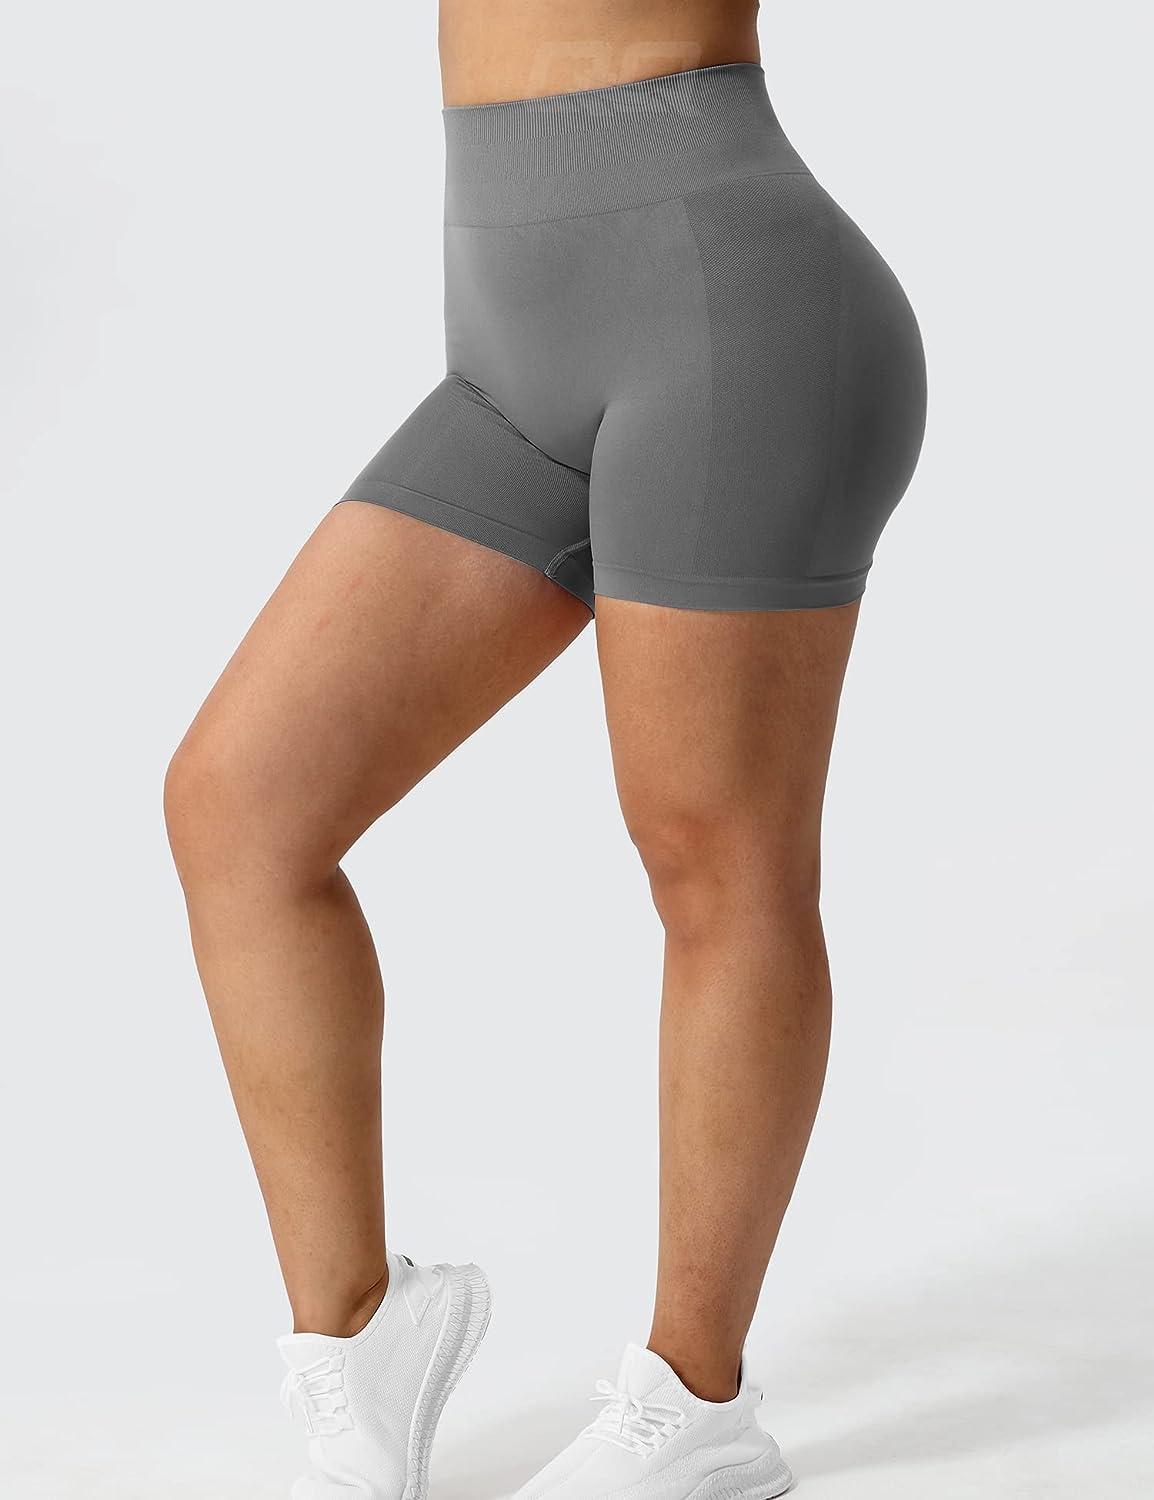 QOQ Women Seamless Scrunch Gym Workout Shorts High-Waisted Butt